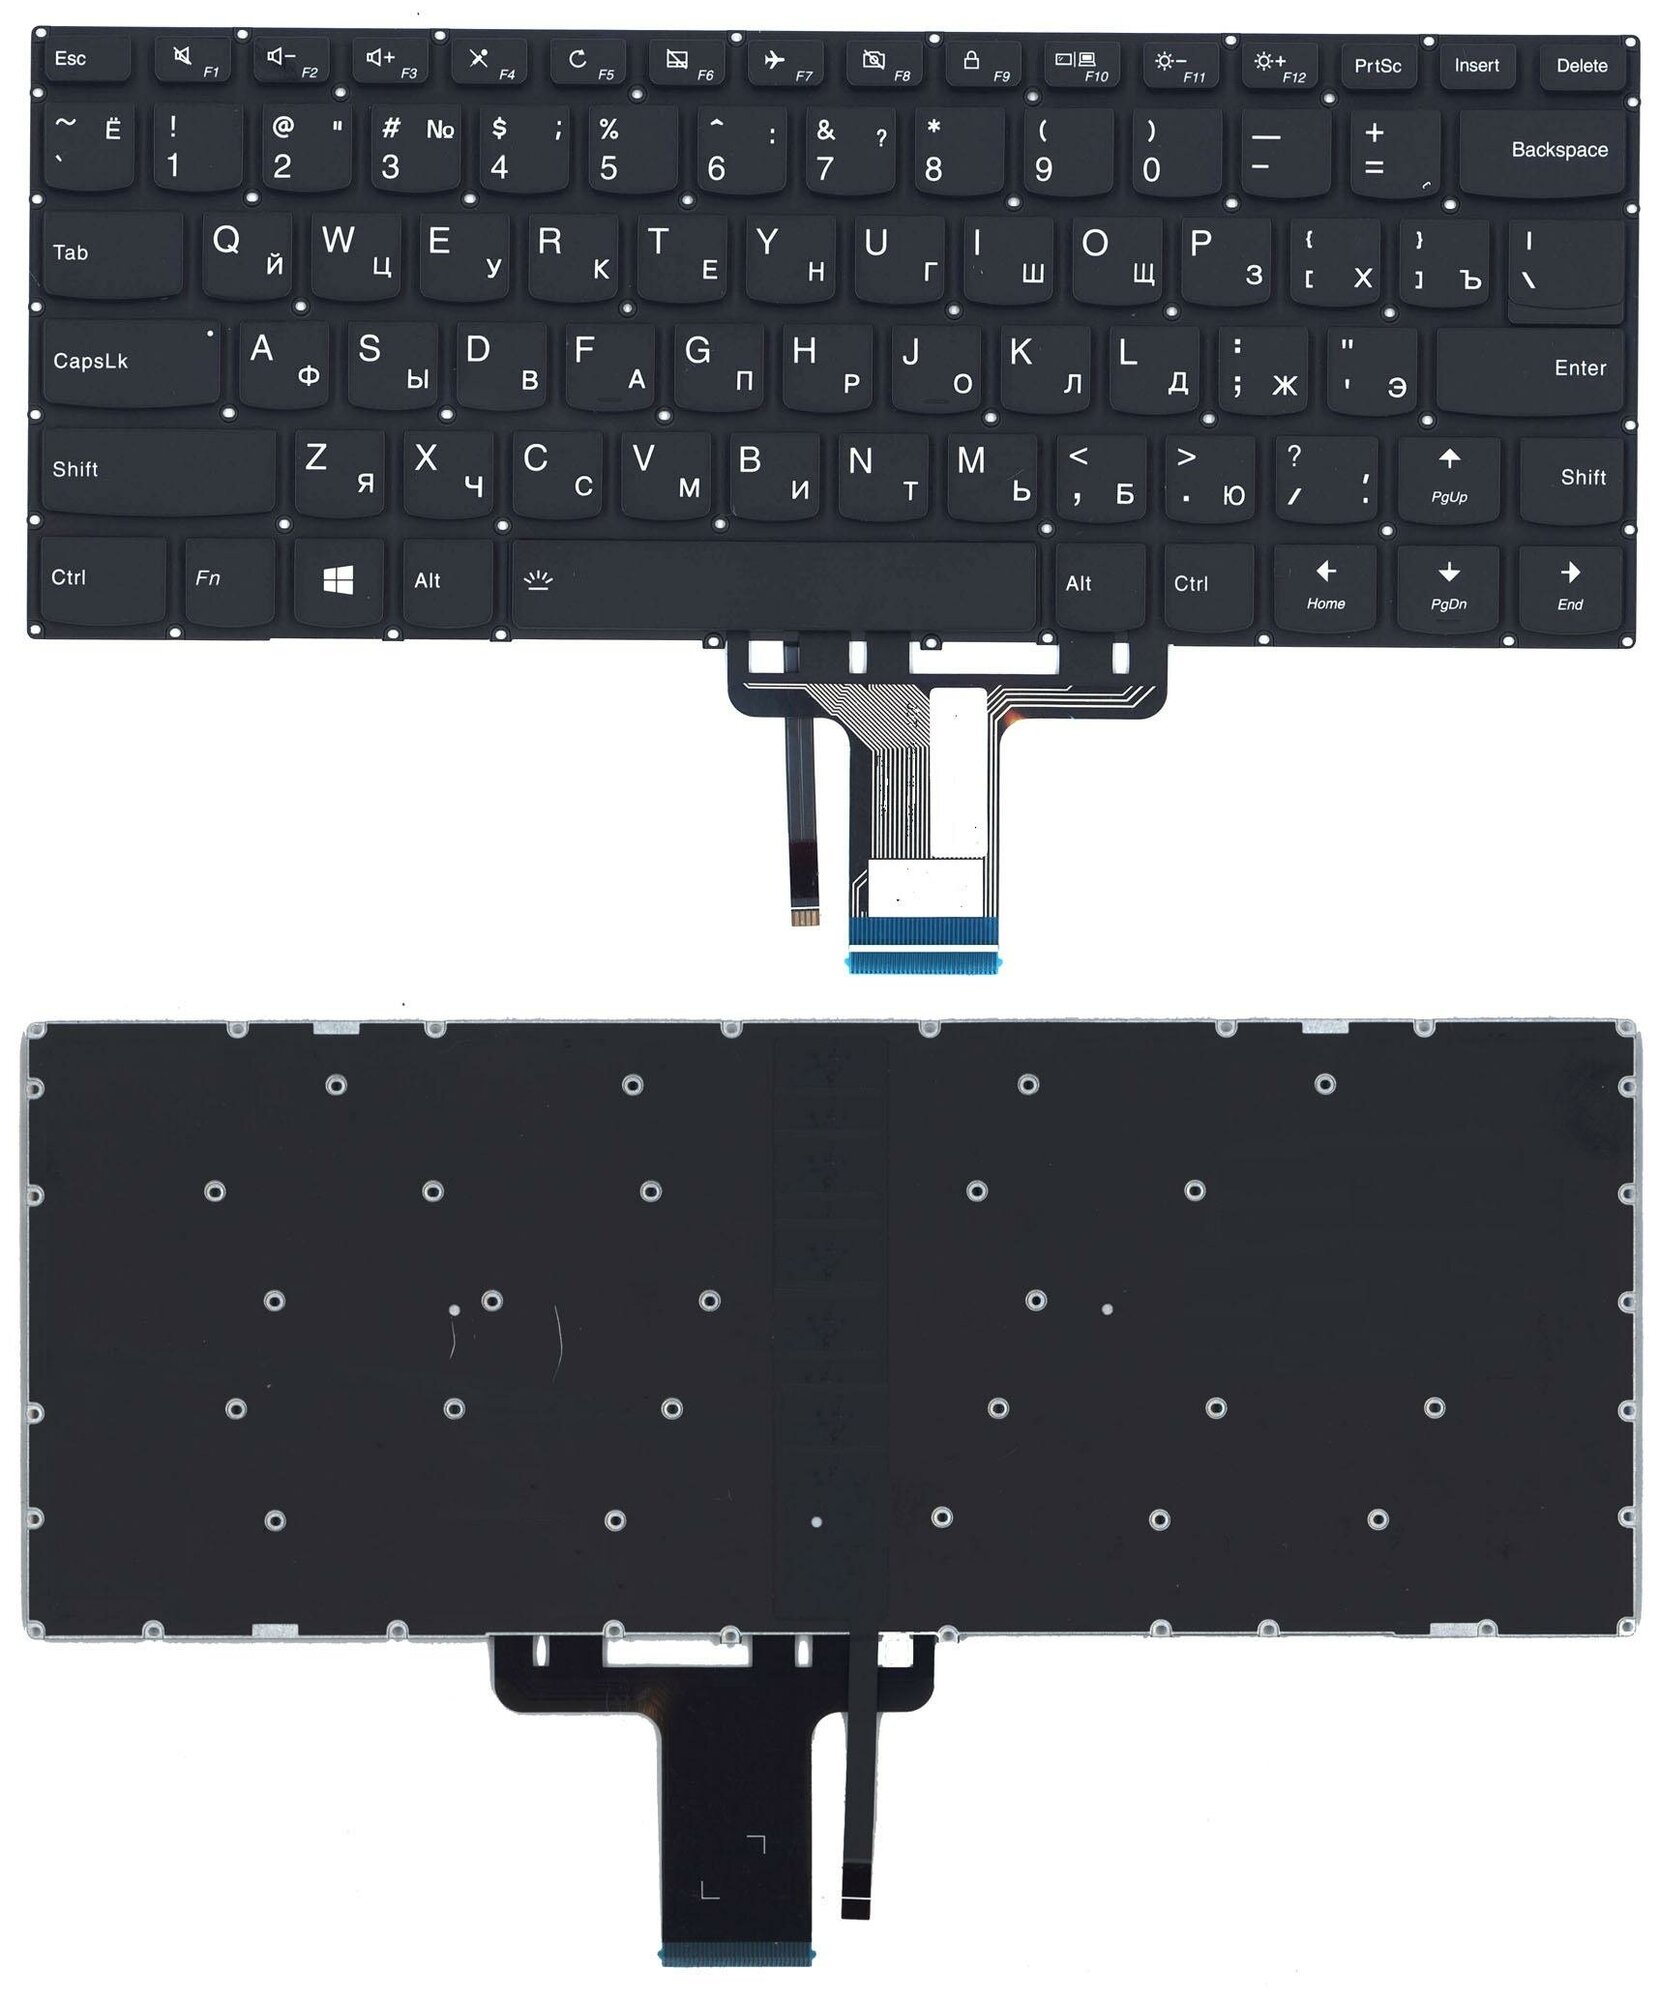 Клавиатура для ноутбука Lenovo Yoga 510-14ISK черная с подсветкой